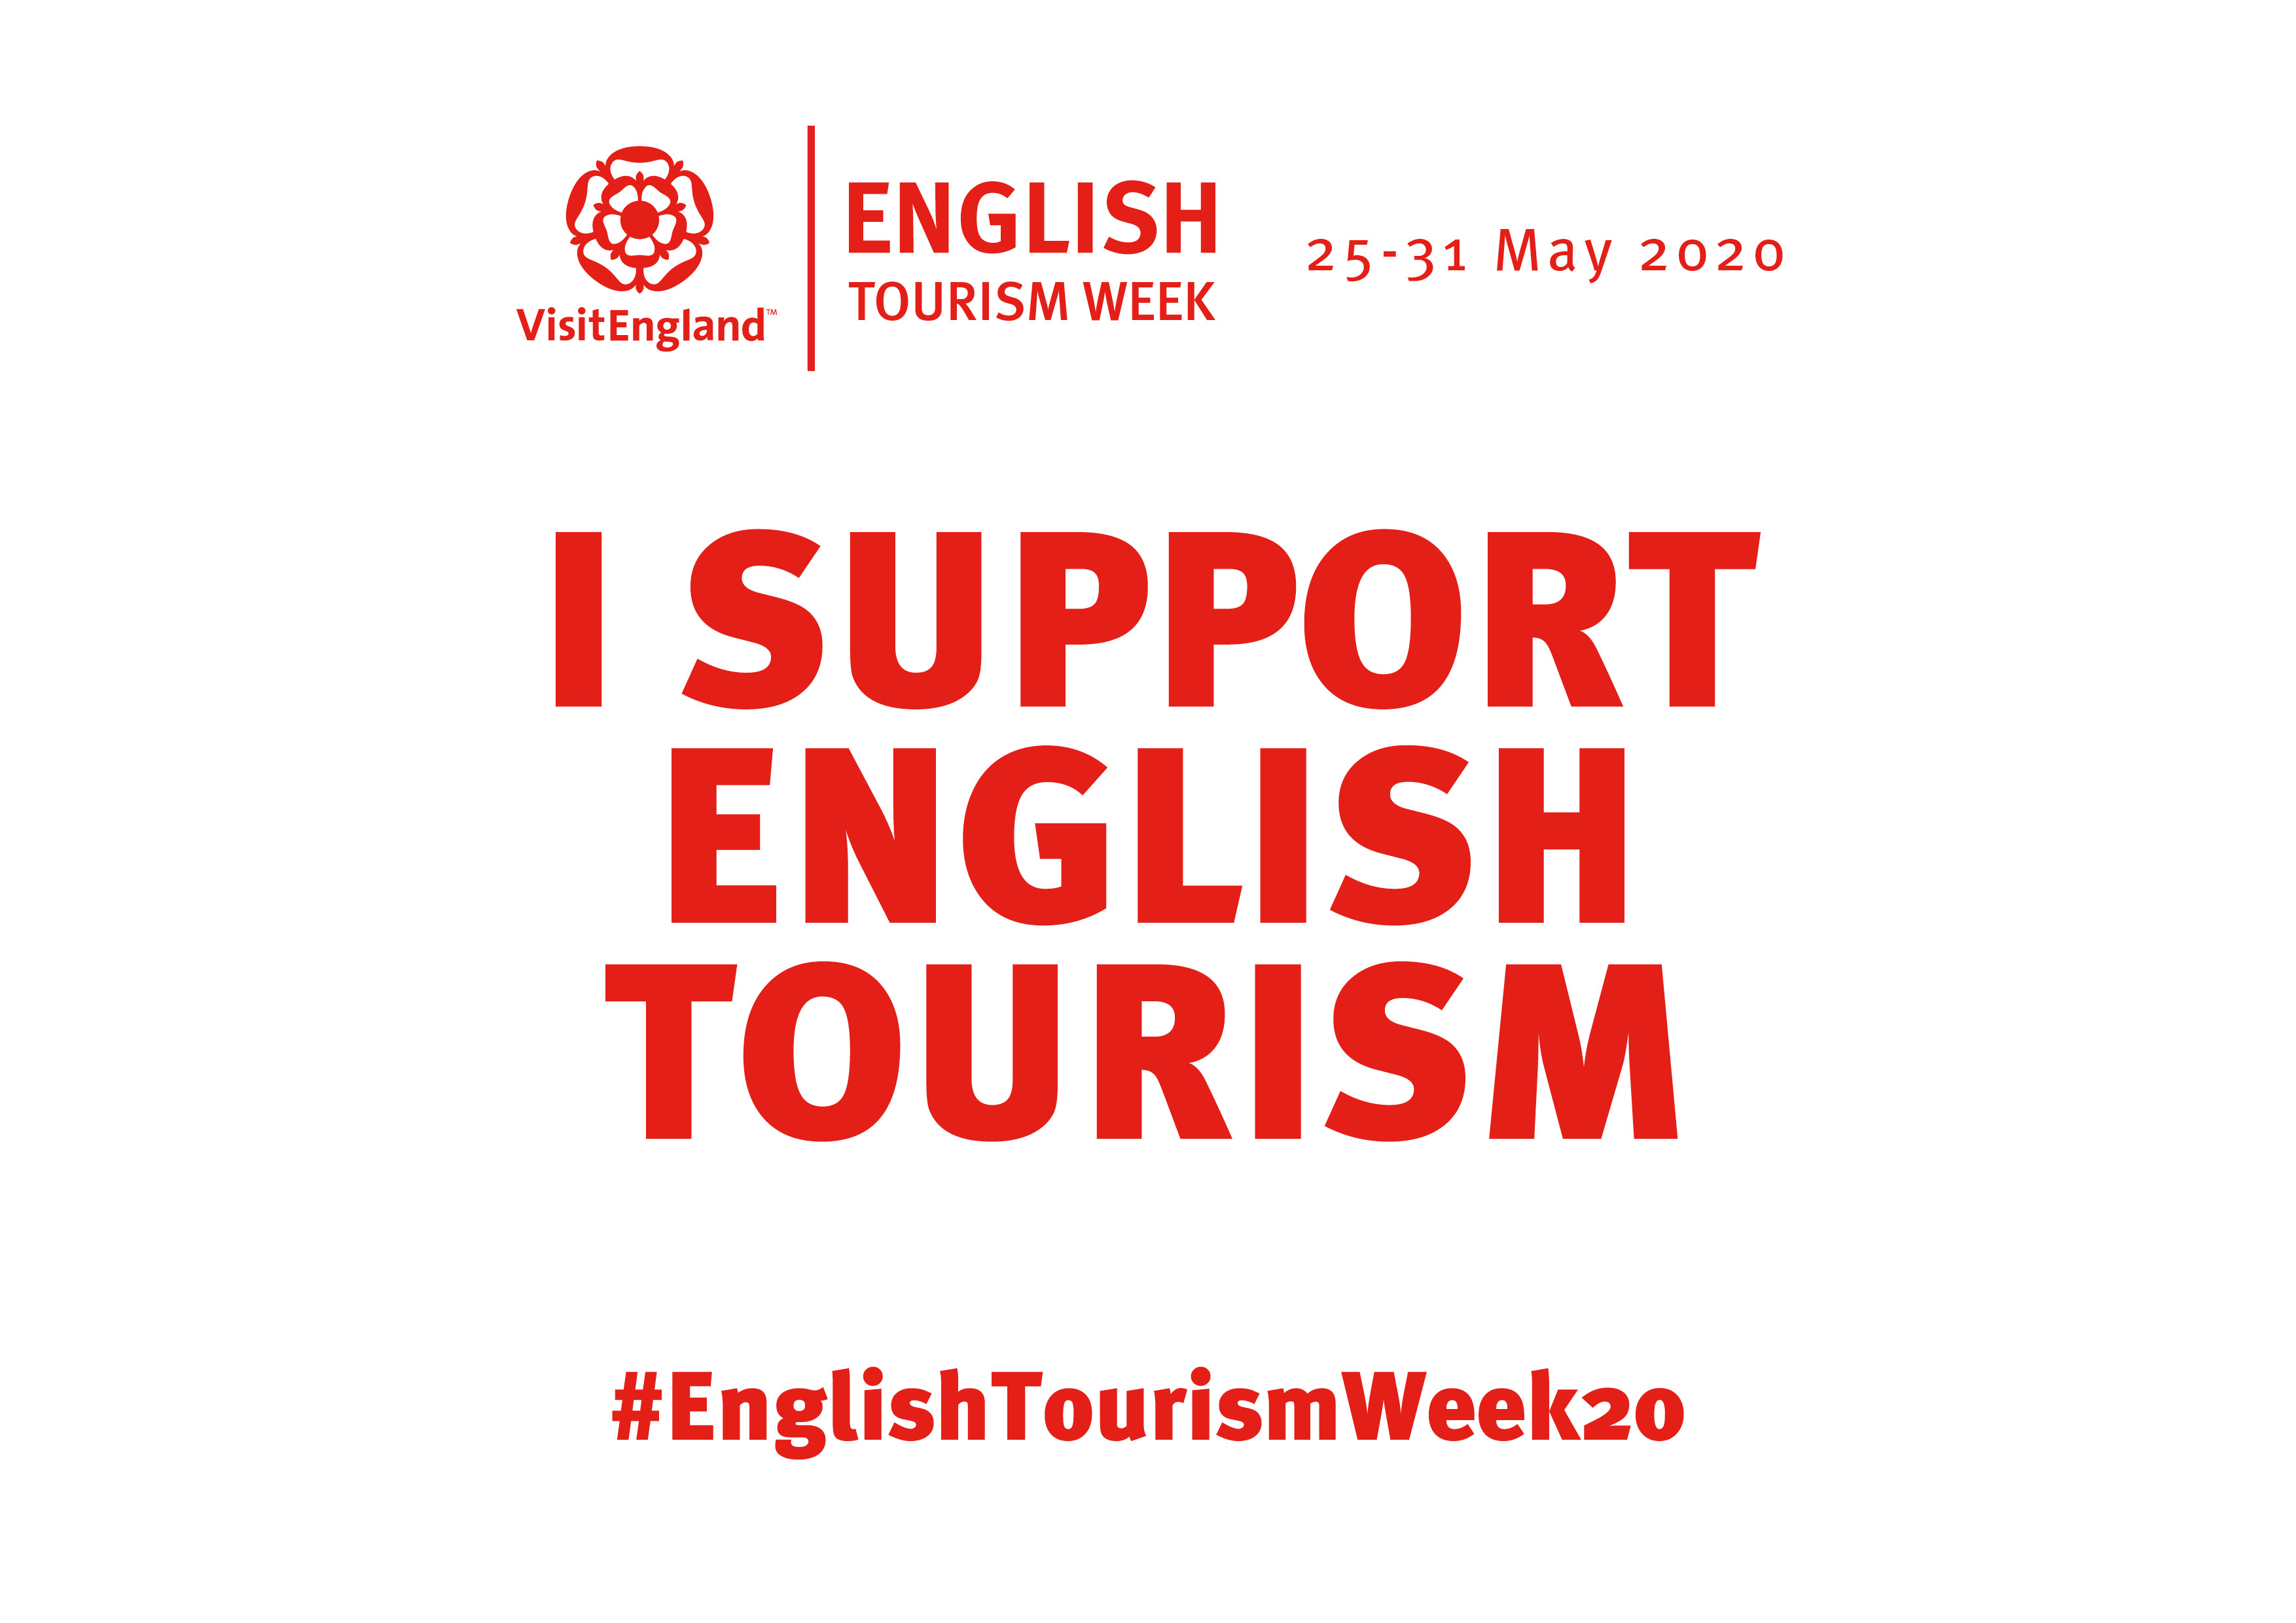 EnglishTourism Week